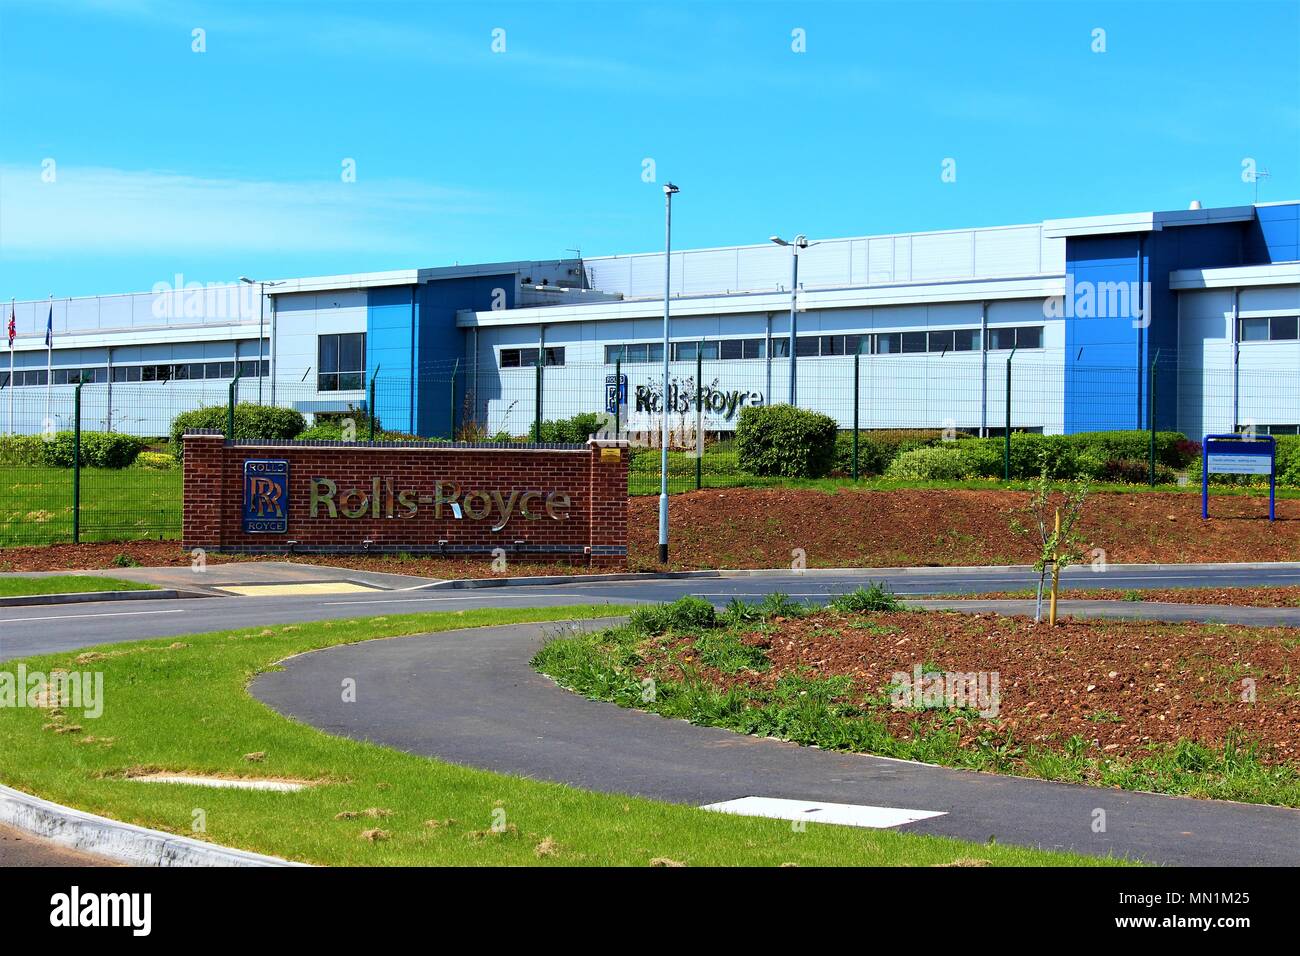 La Rolls Royce en usine, Parc Harrier Hucknall, Nottingham, Royaume-Uni. Prise le 13 mai 2018. Banque D'Images